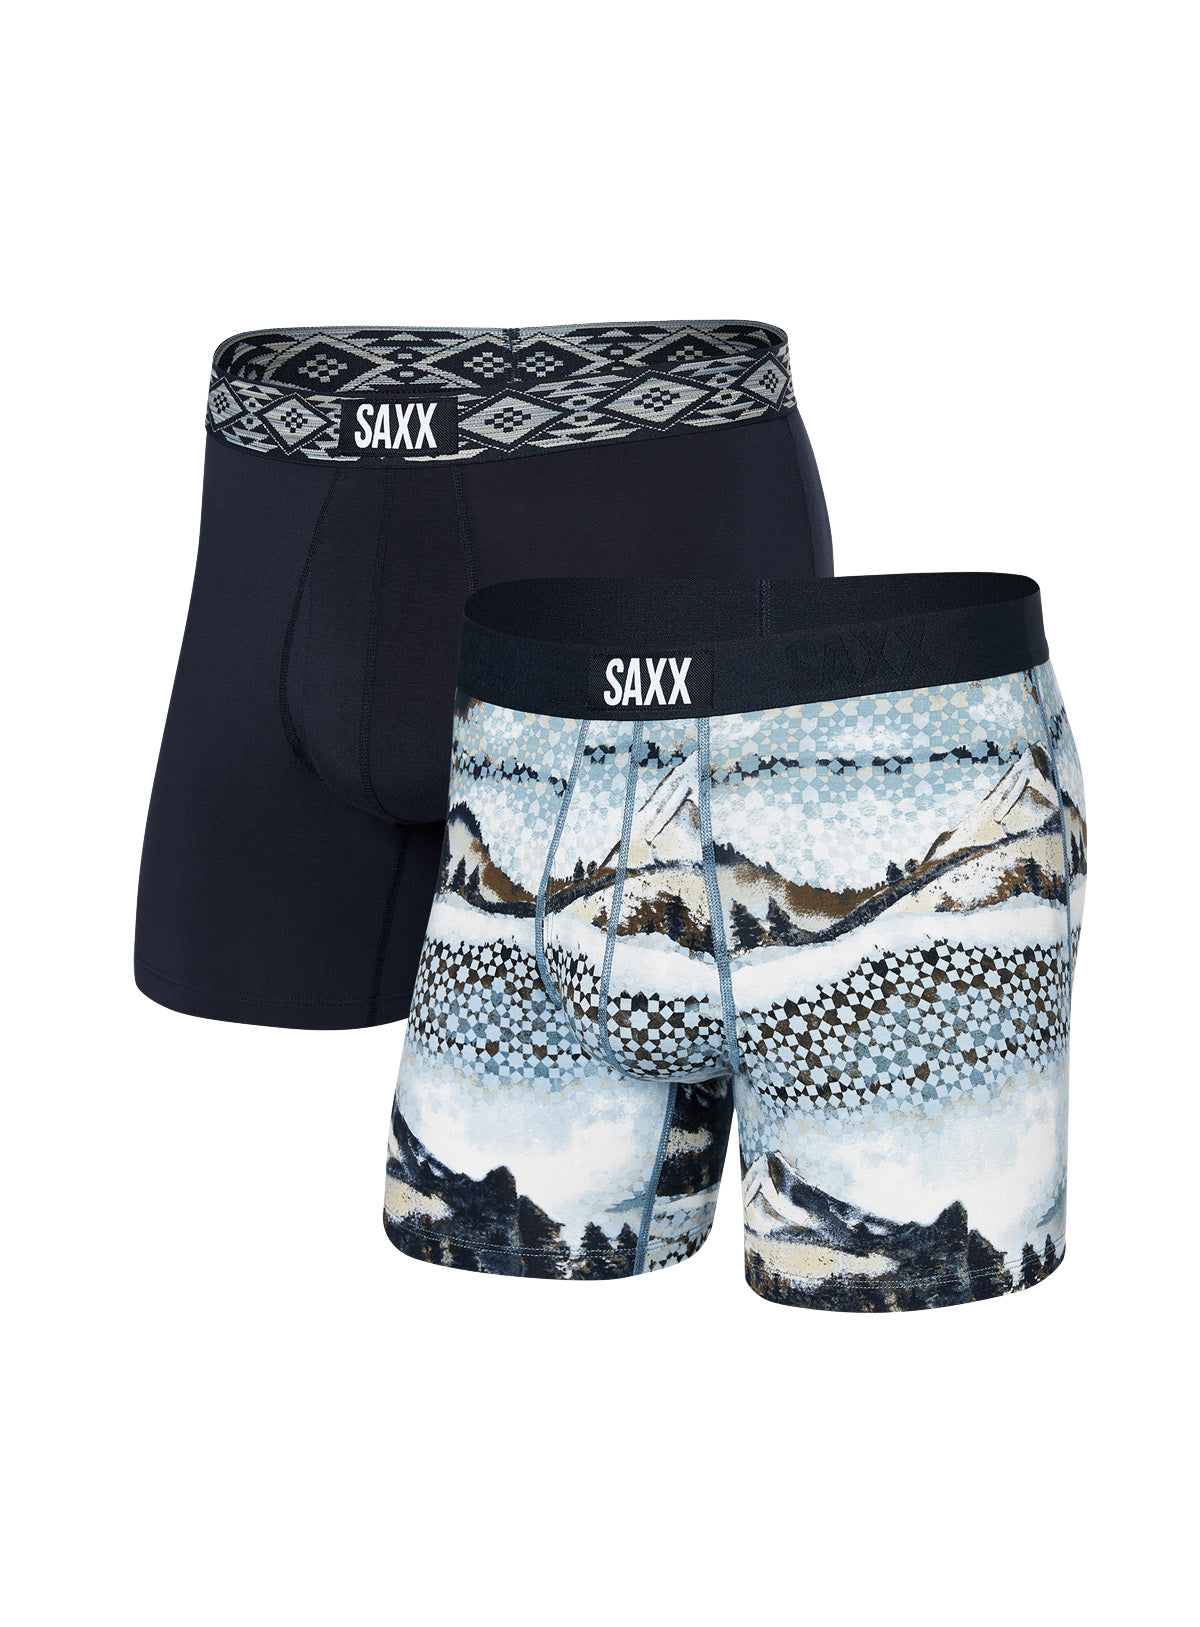 Mountains Print Boxer Underwear Duo for men - Saxx